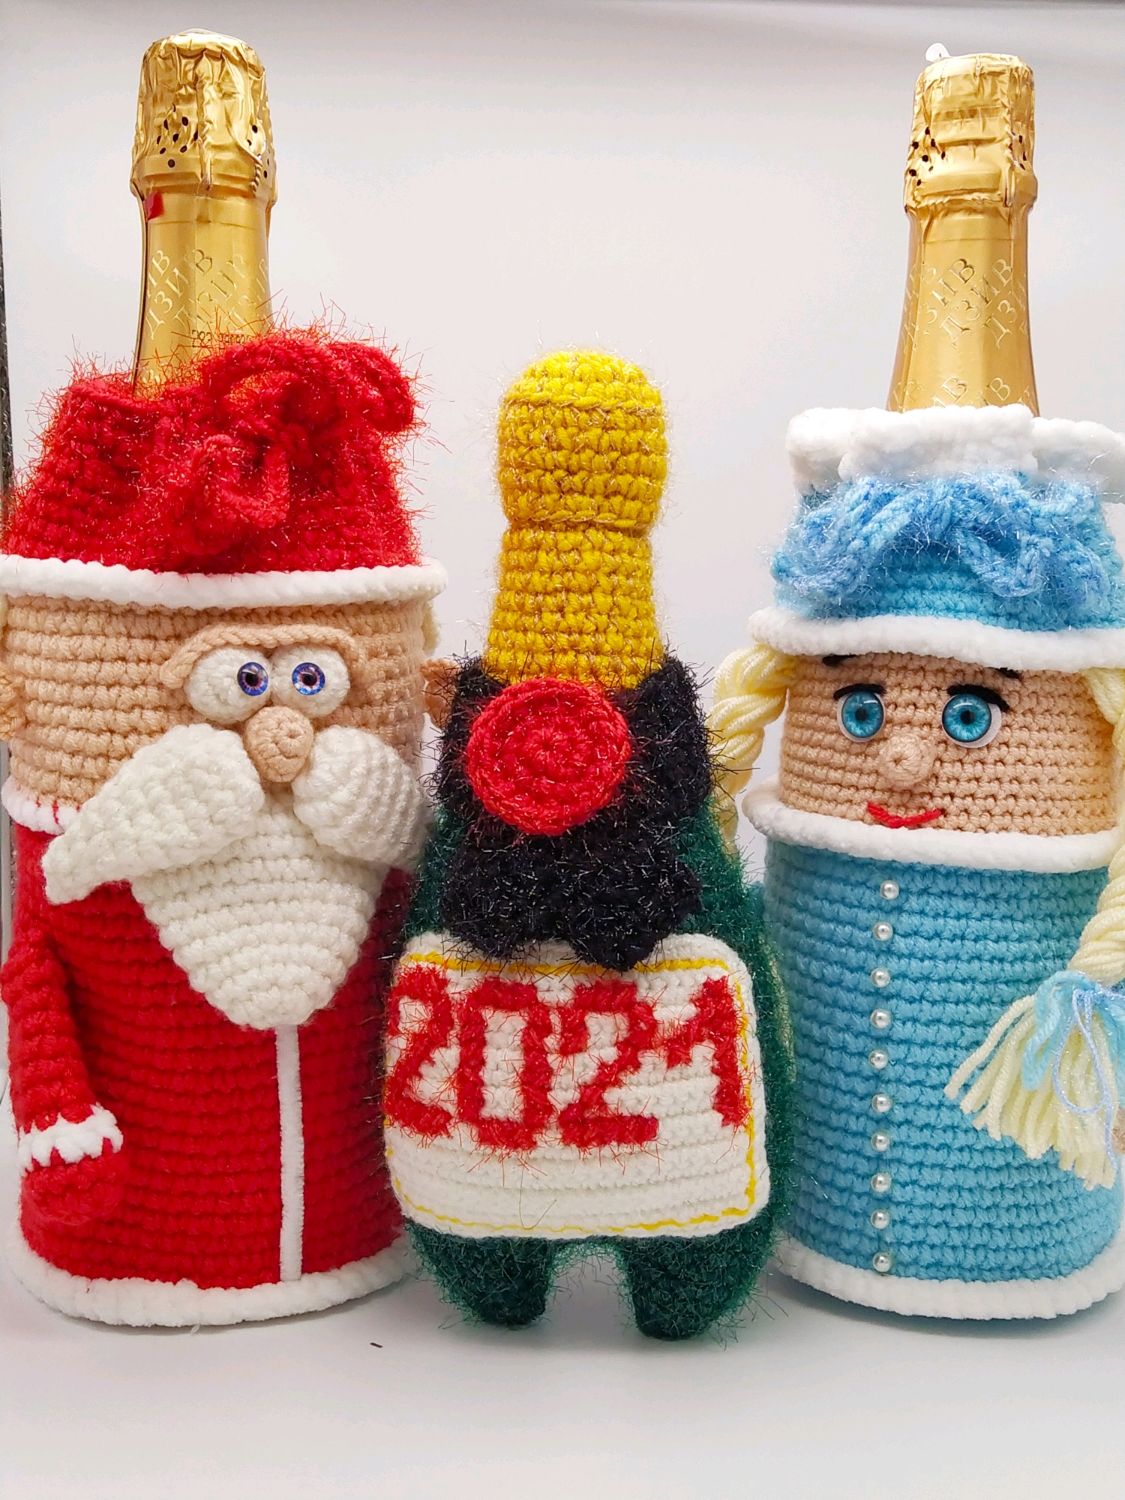 Дед Мороз и Снегурочка купить на Ярмарках, купить изделие ручной работы (хенд мейд) в Украине.